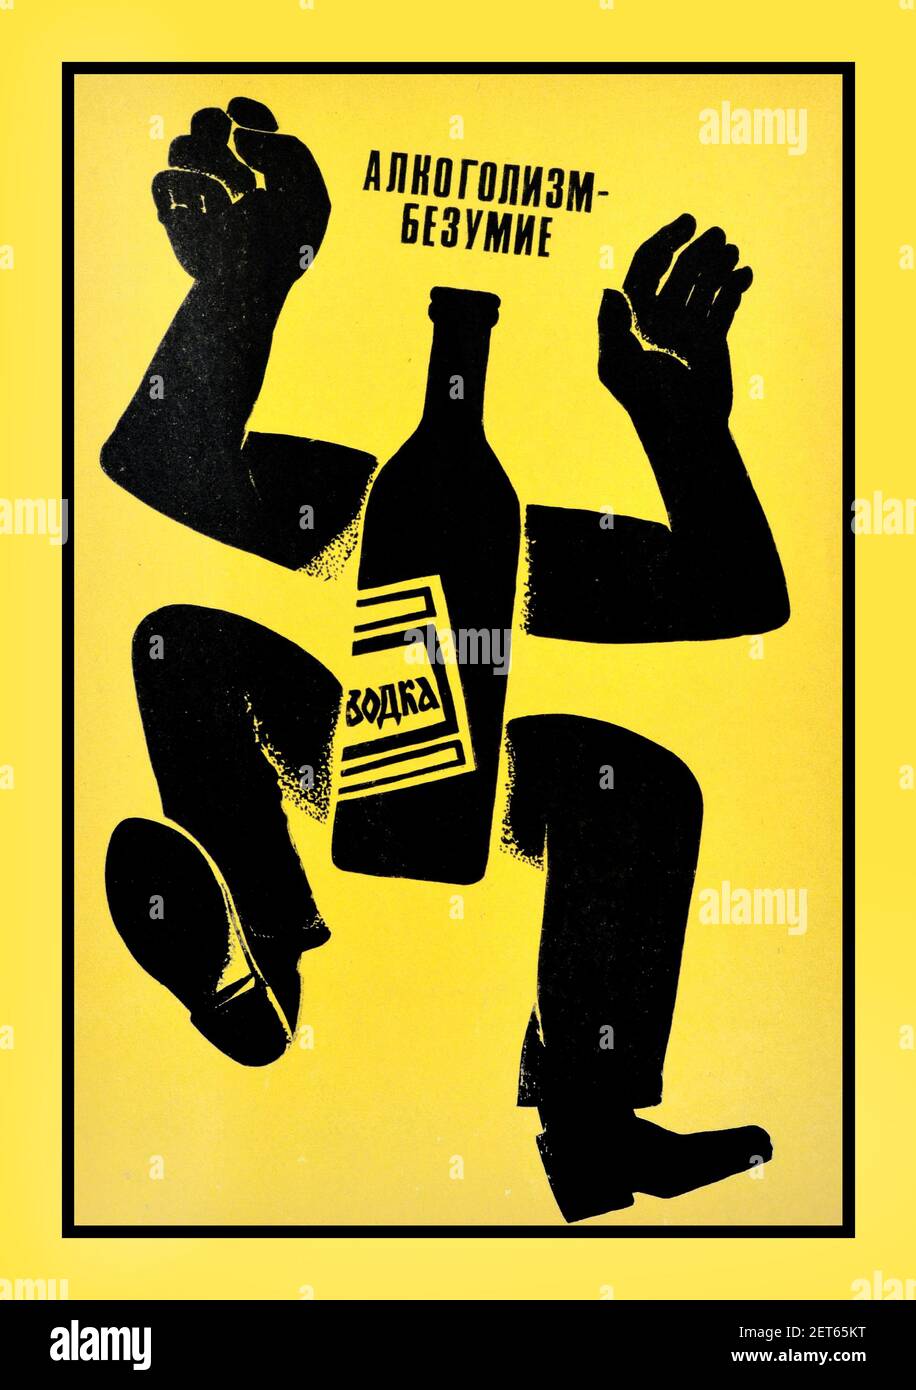 Affiche russe soviétique de propagande antialcool dans les années 1980  intitulée "alcoolisme - folie" - illustration d'une bouteille de vodka avec  des bras et des jambes tombant en arrière sur fond jaune.